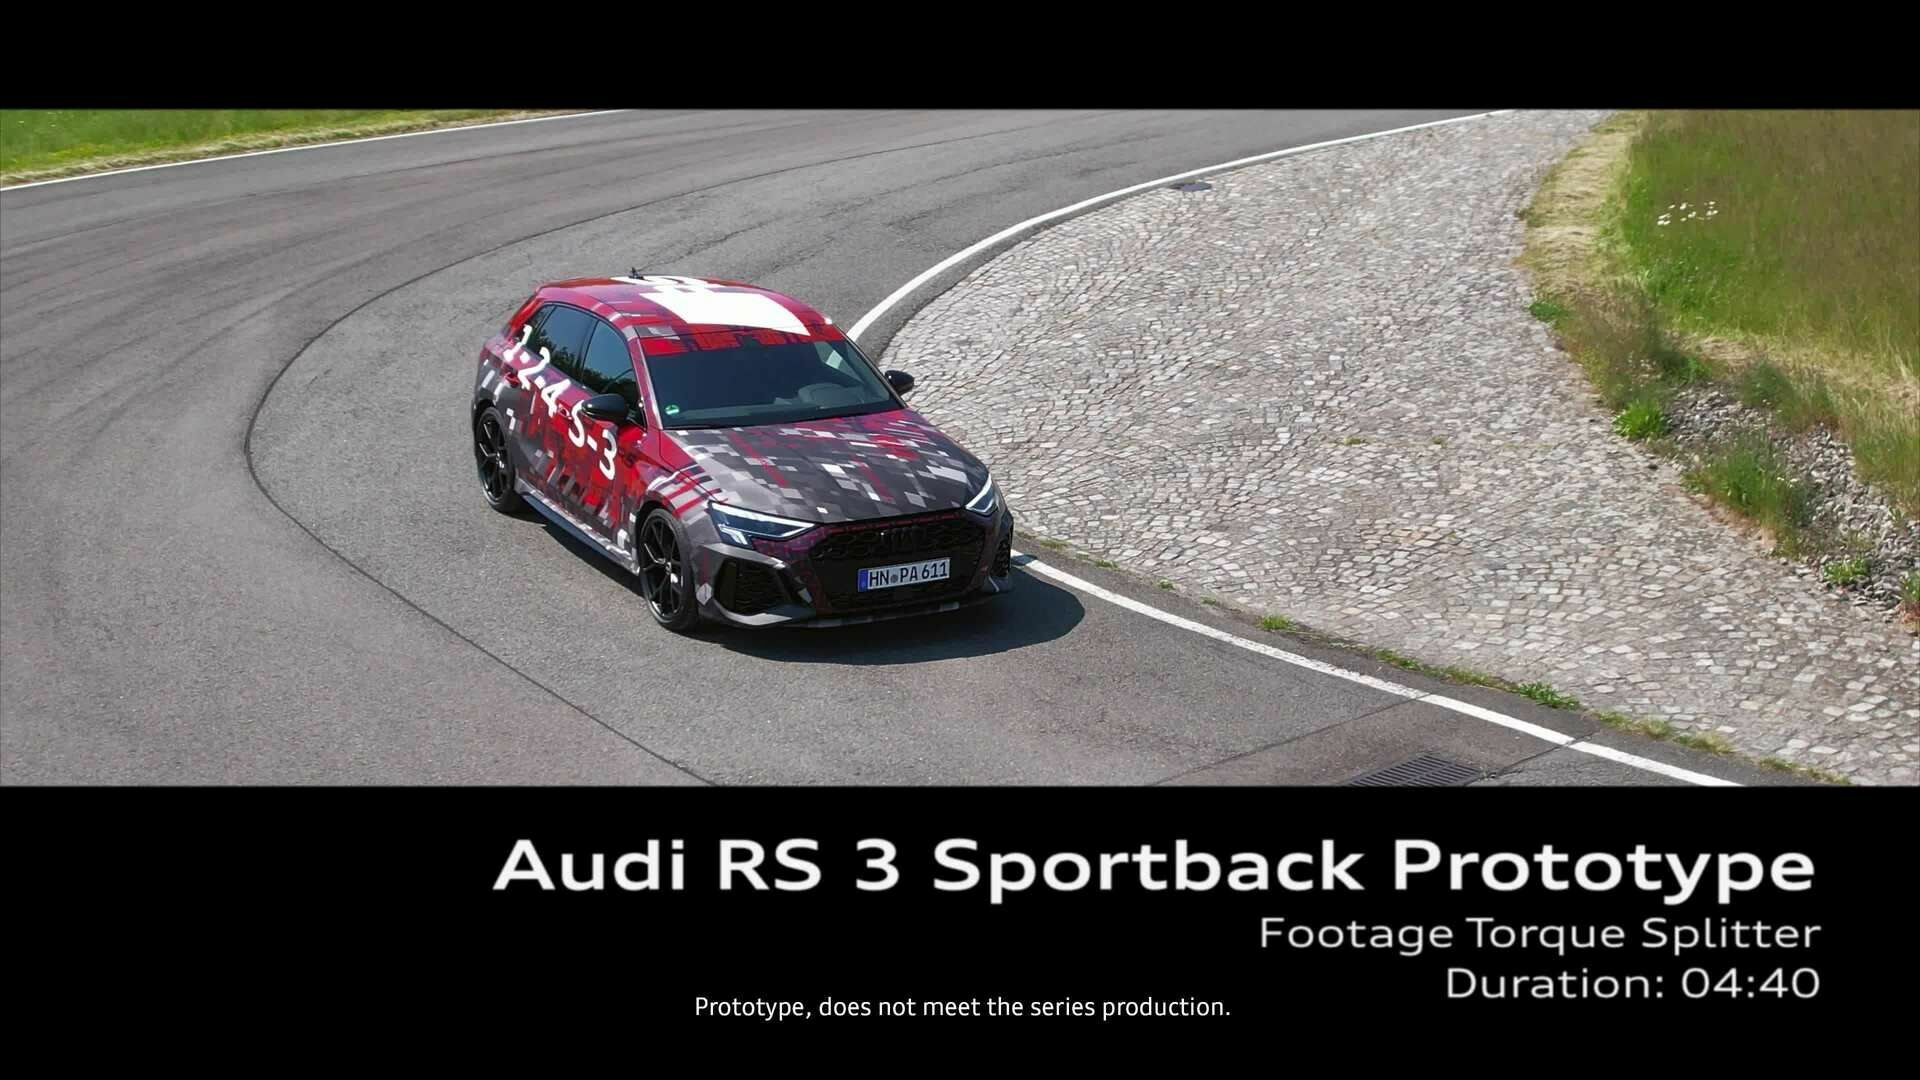 Footage: Audi RS 3 Sportback prototype